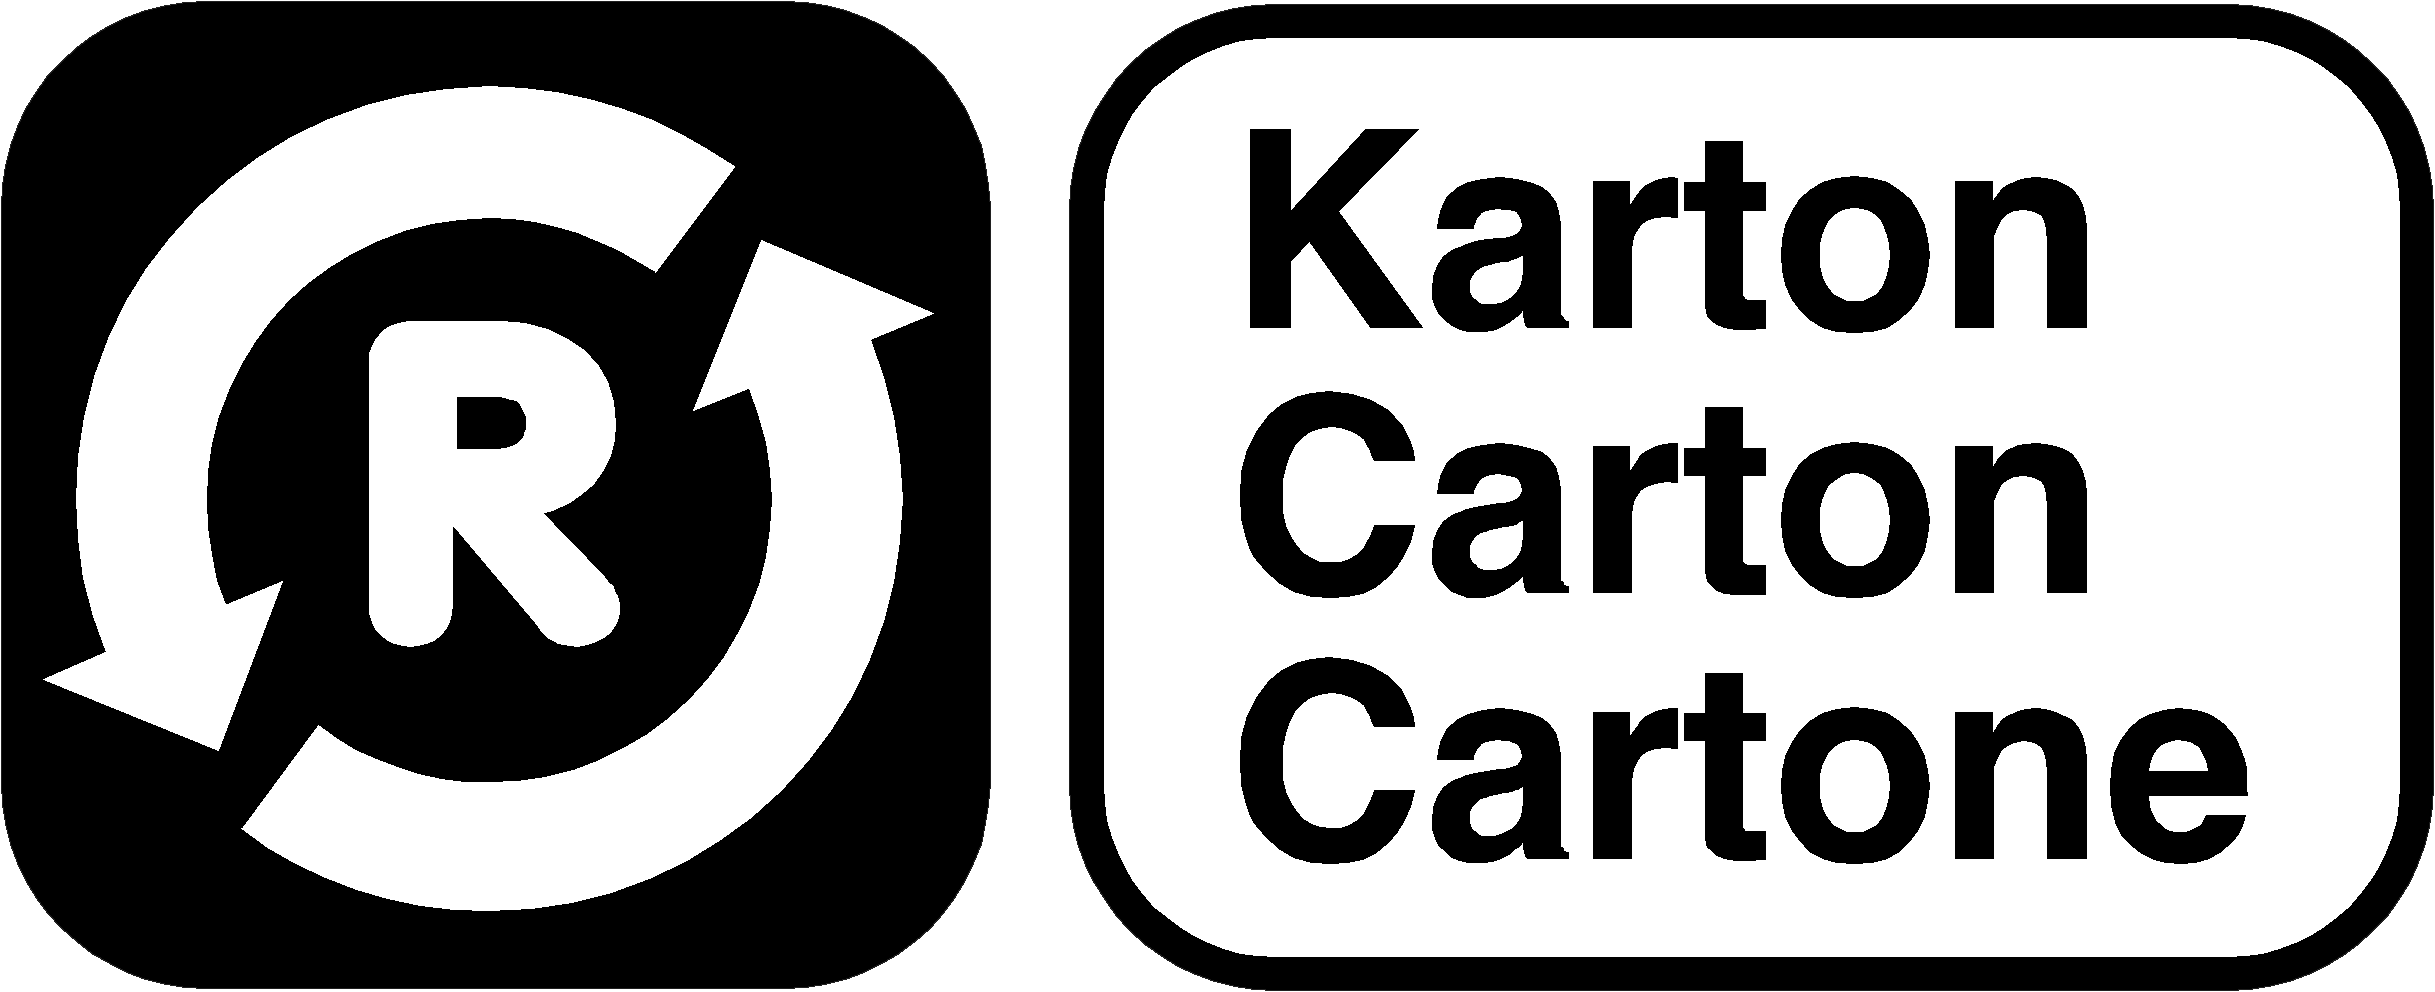 Karton / Carton / Cartone